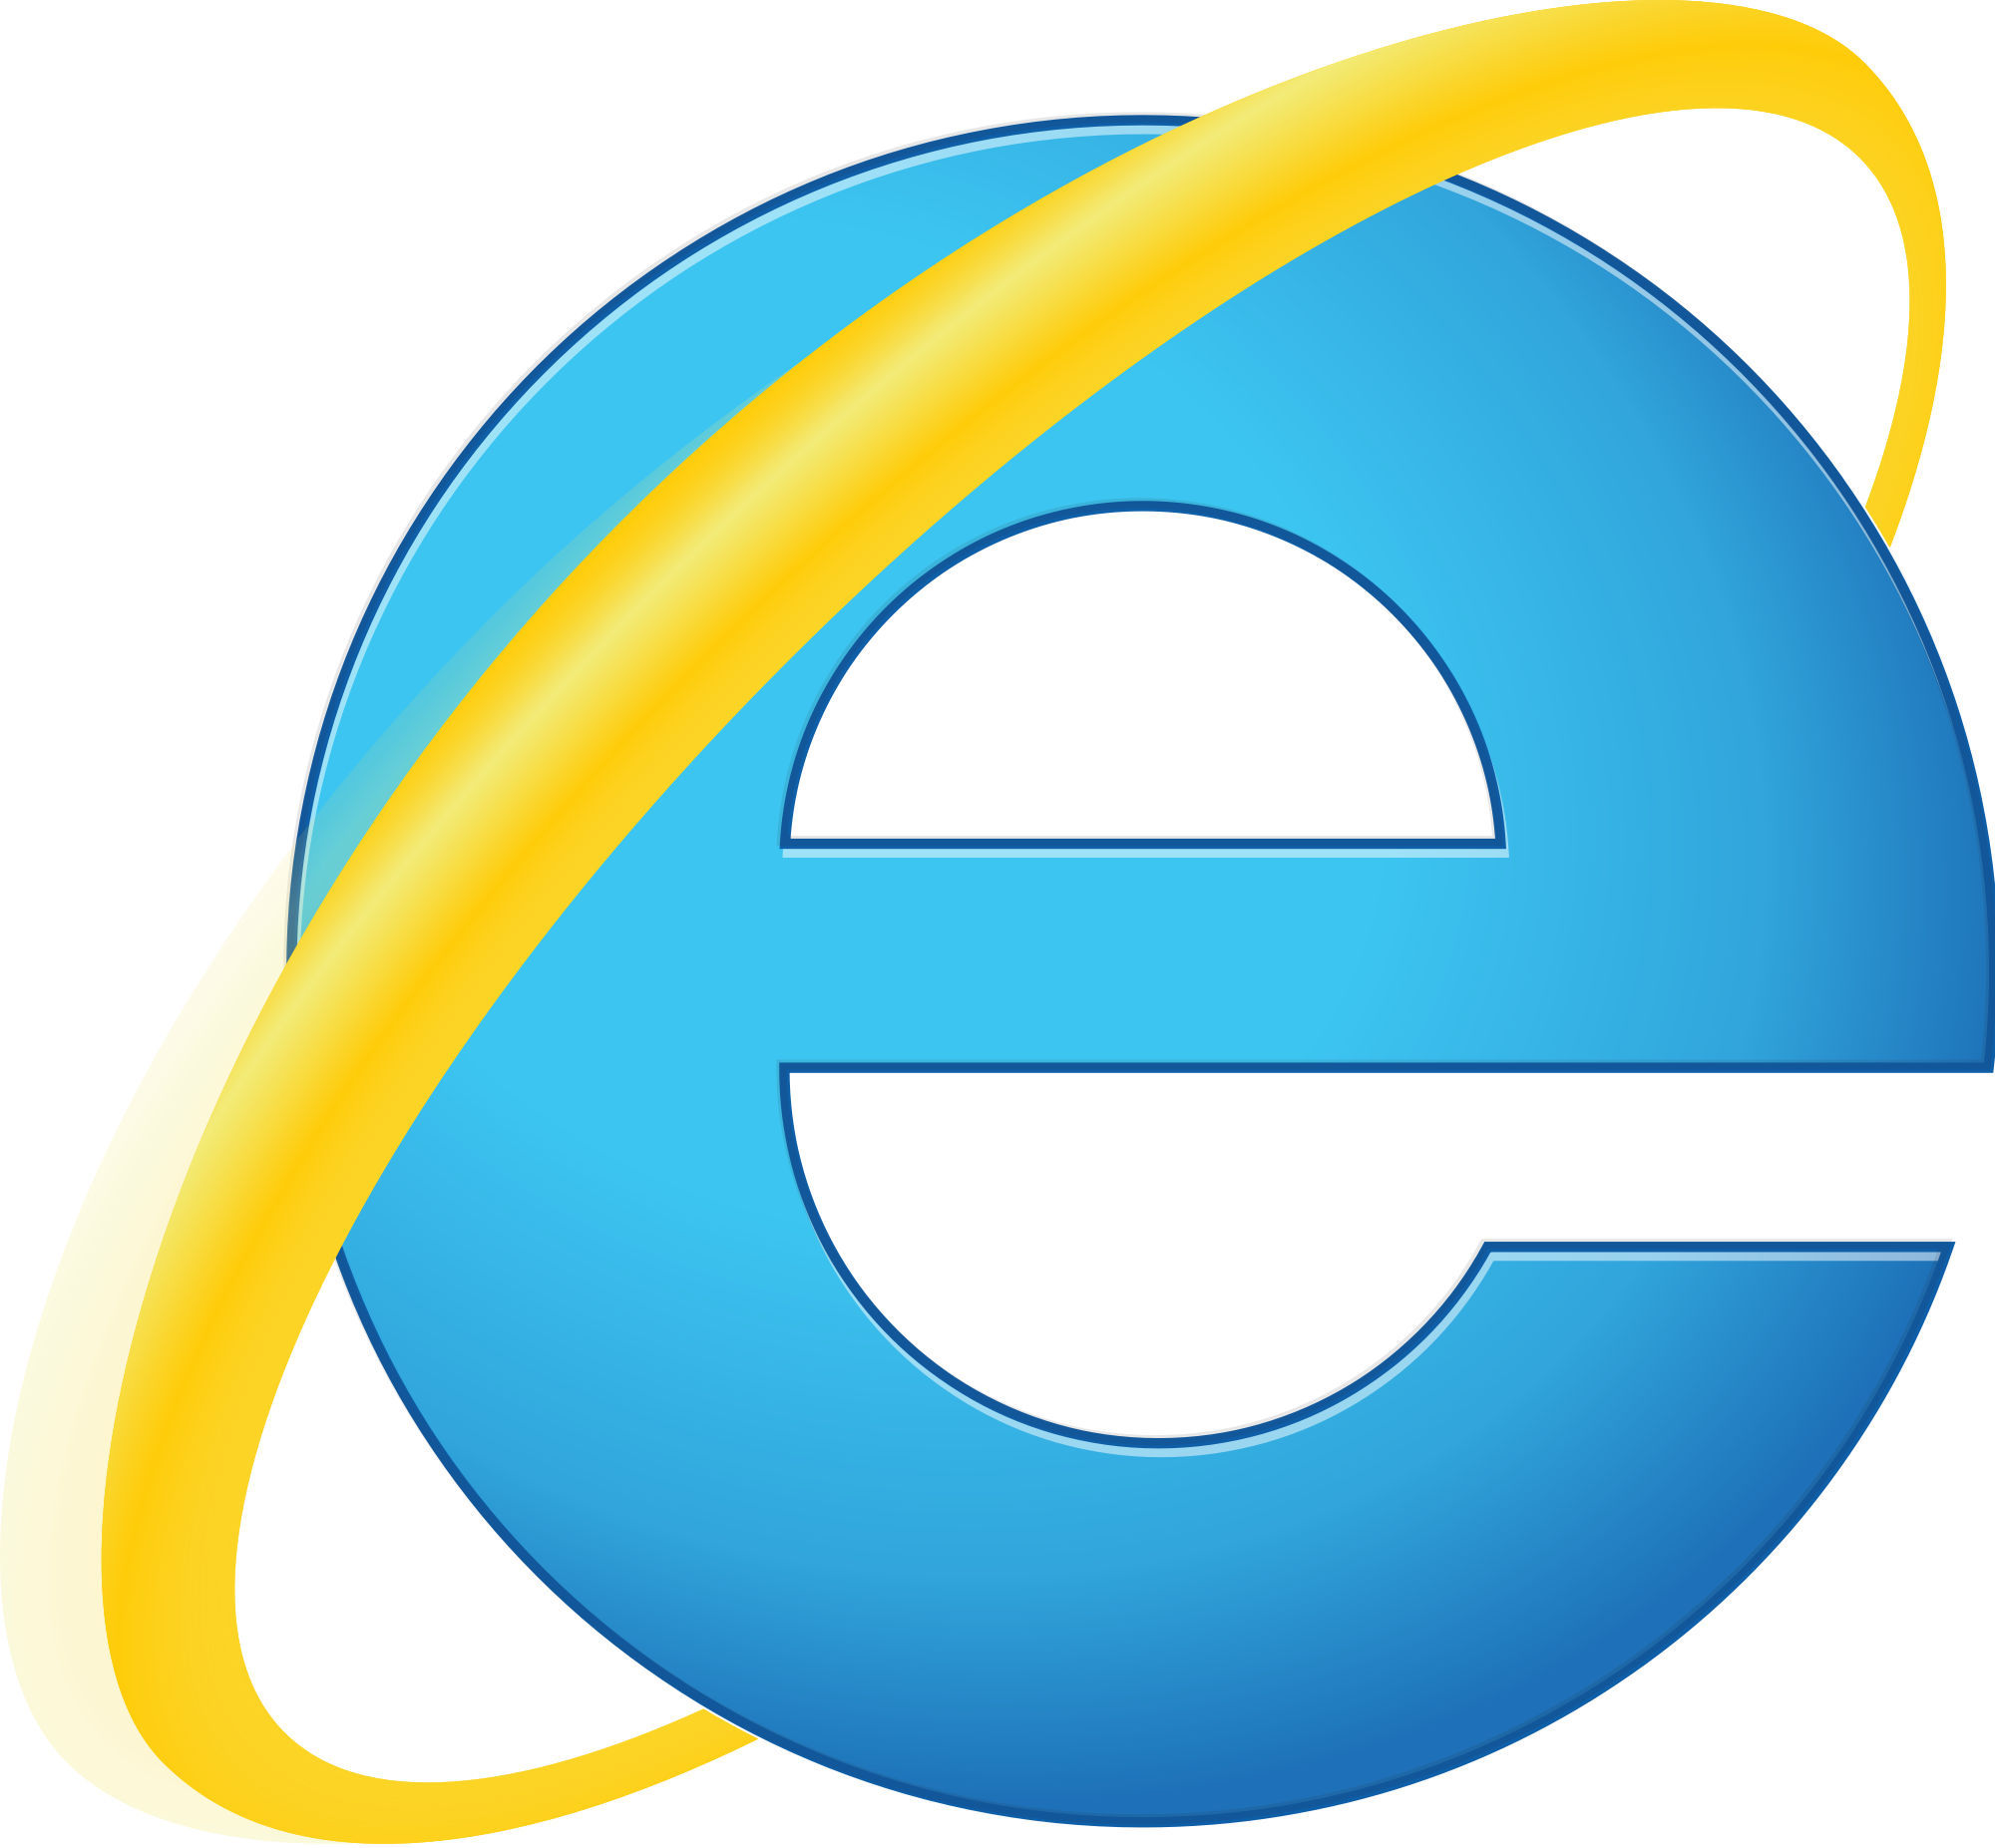 Internet Explorer logo PNG images 